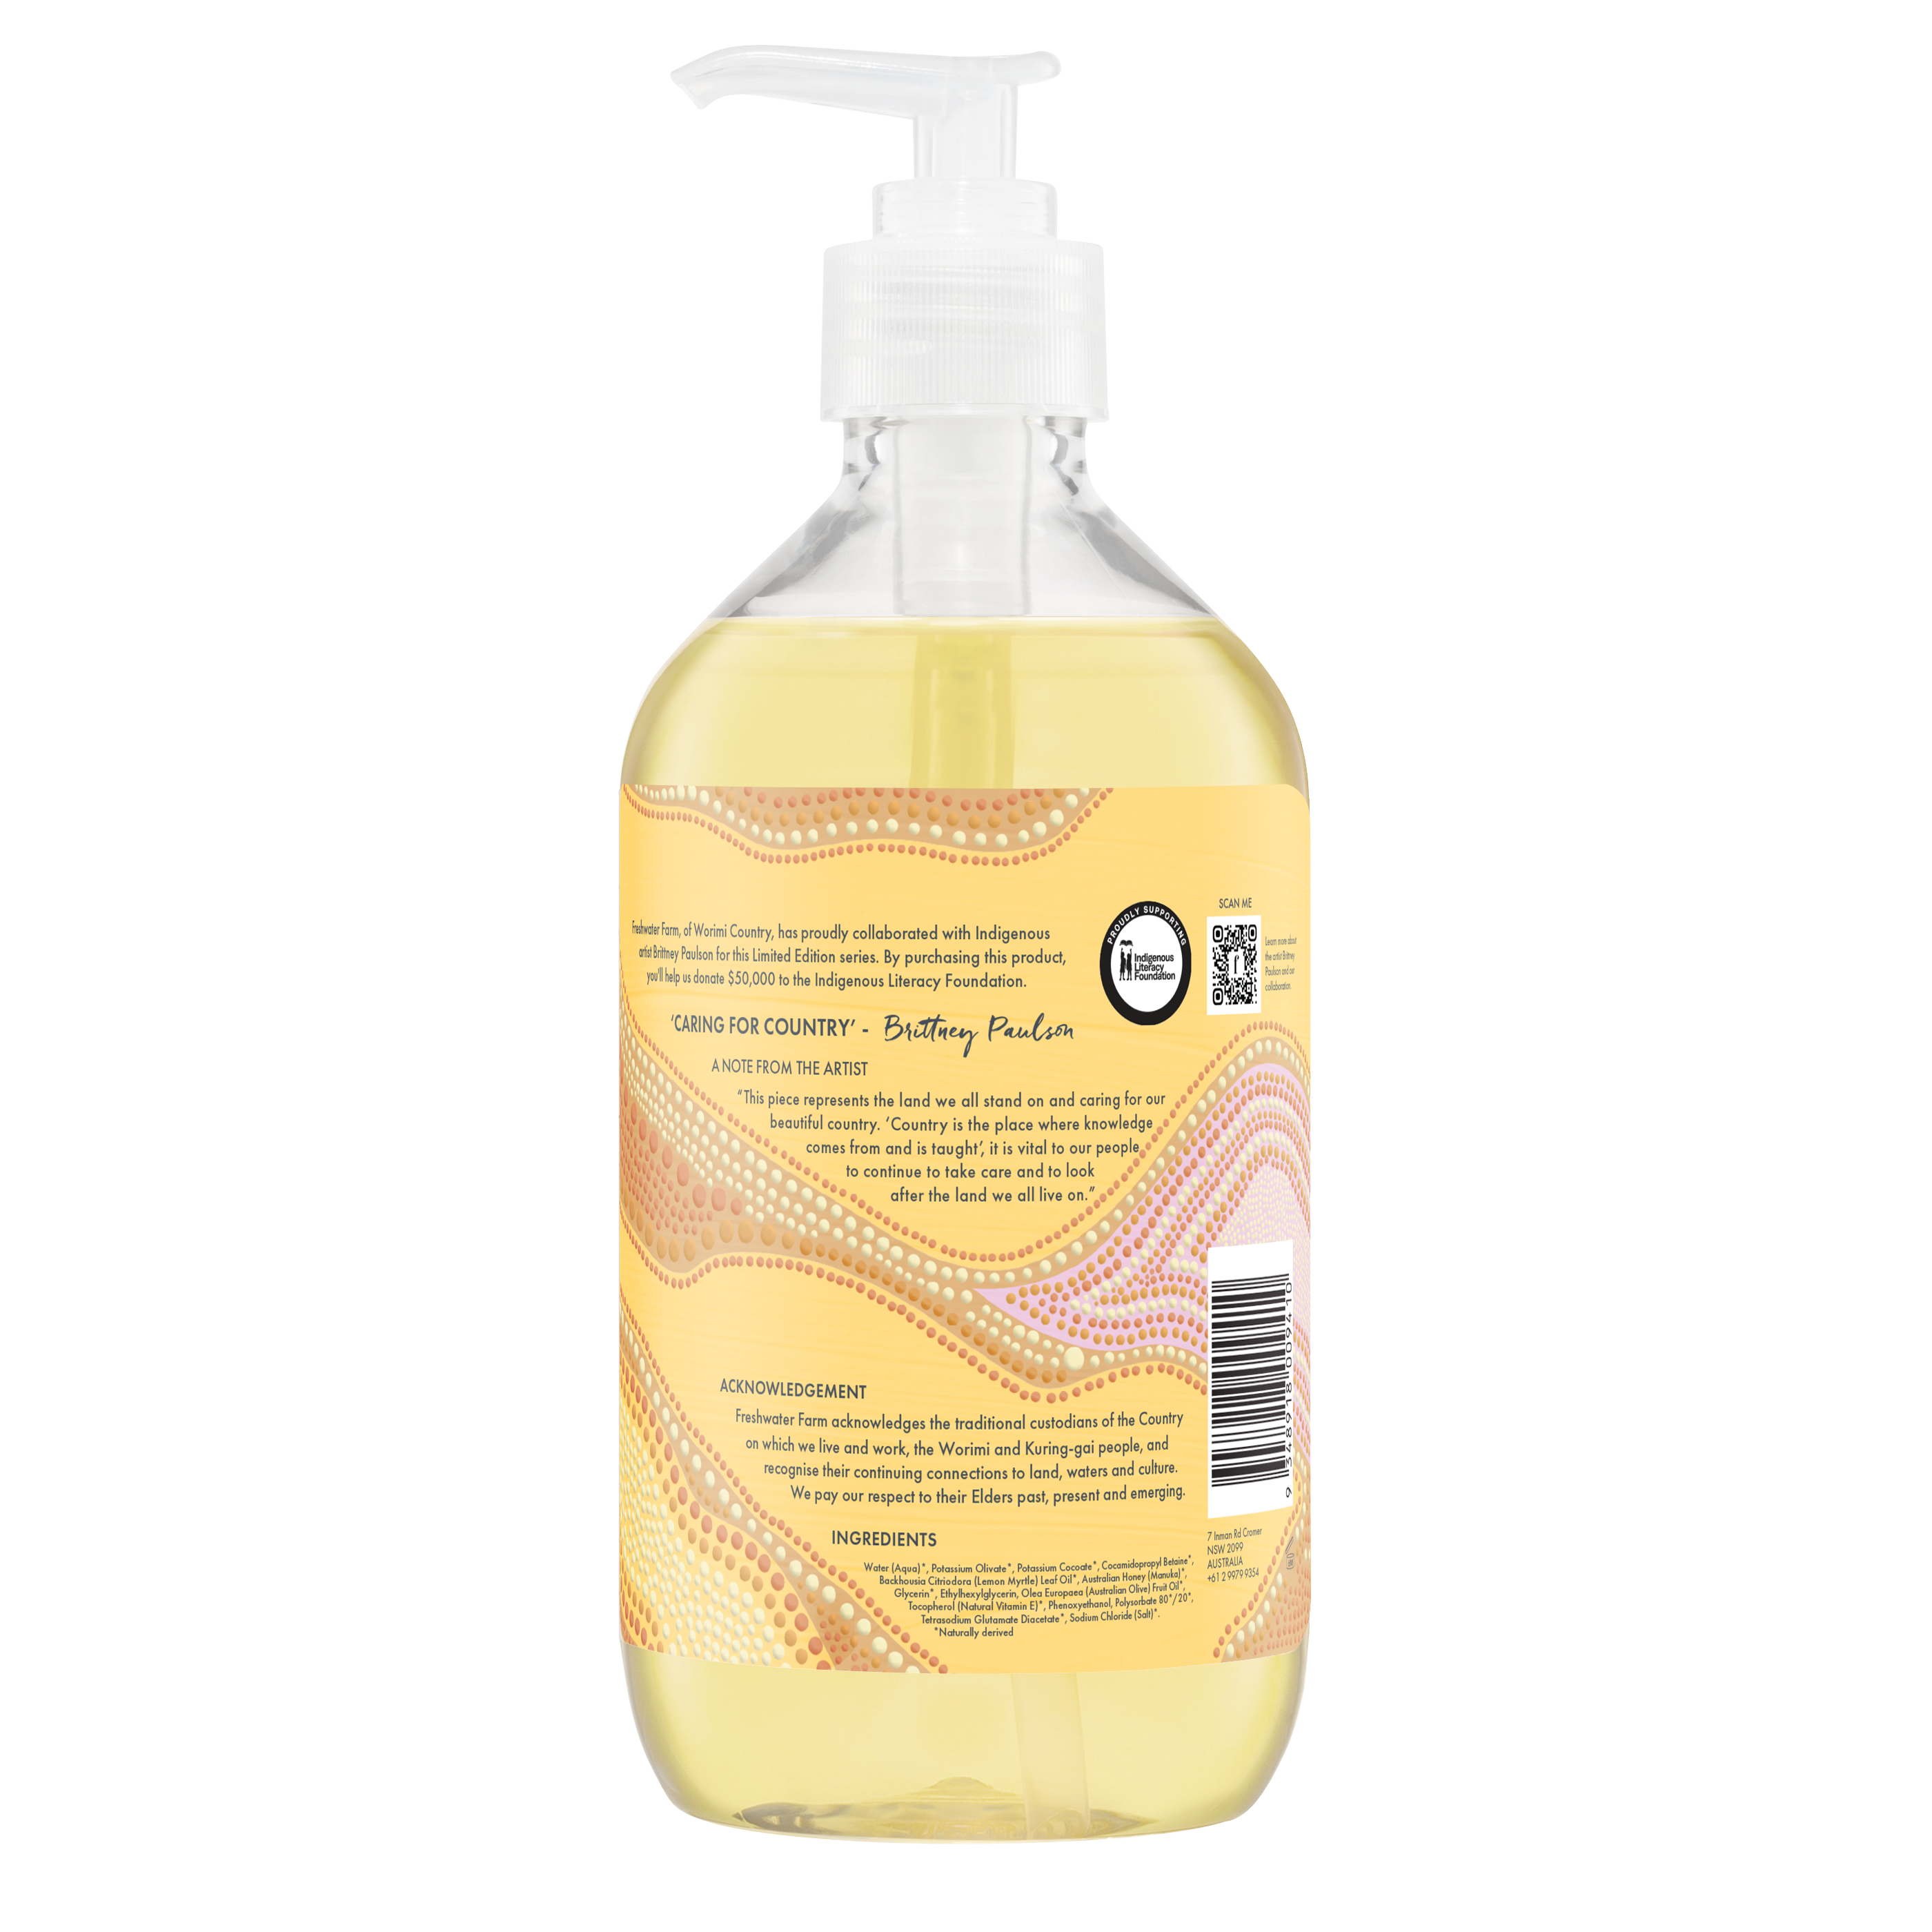 LIMITED EDITION HAND WASH | Soothing Lemon Myrtle Oil + Manuka Honey 500ml